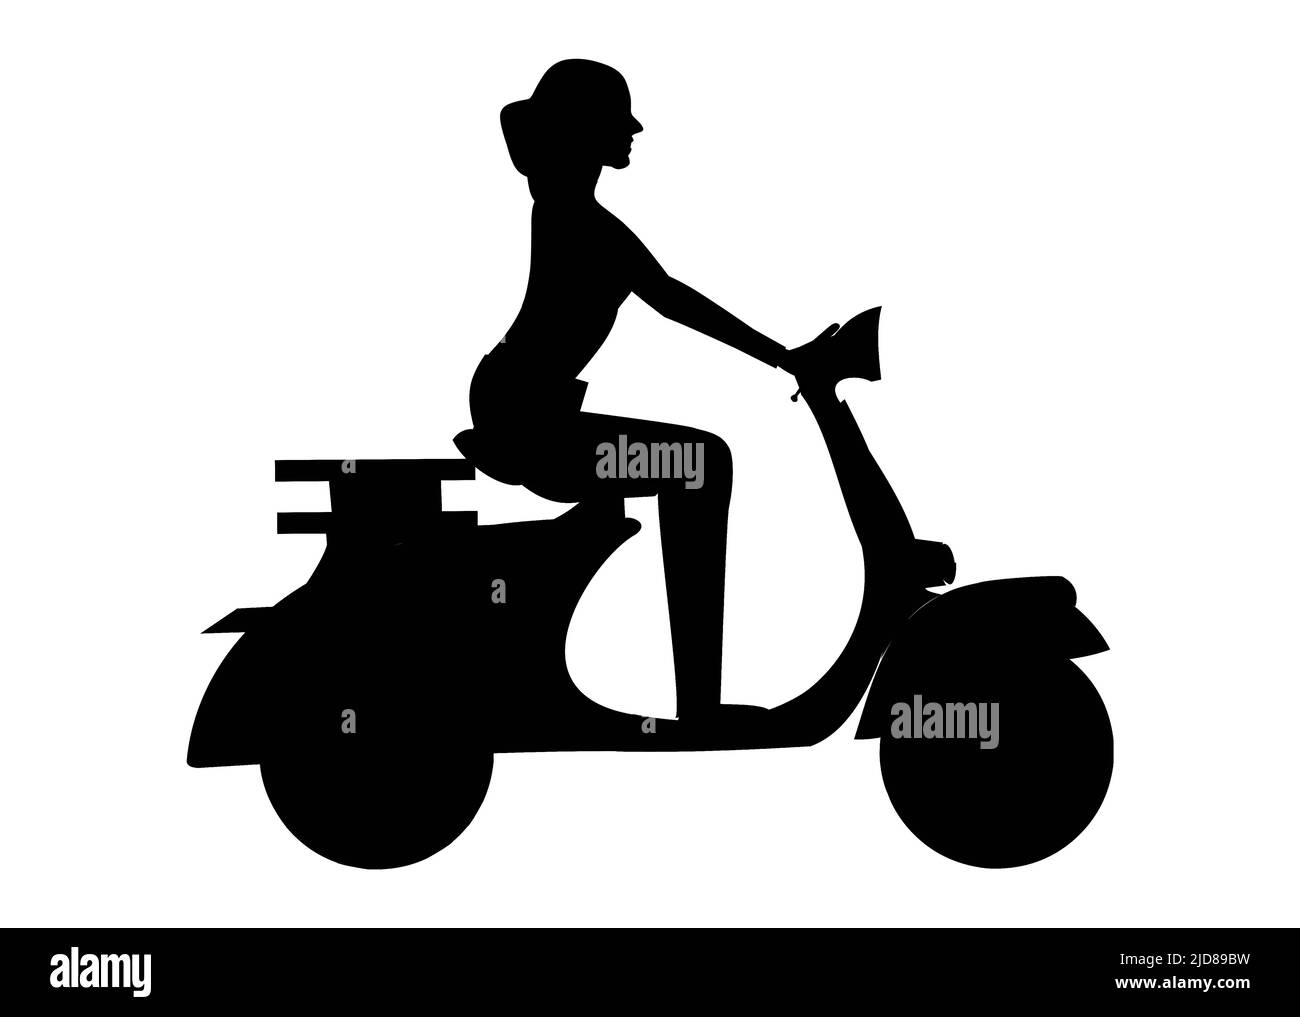 Cartoon schwarz Silhouette weibliche Figur Reiten Motorrad oder Roller. Vektorgrafik Stock Vektor